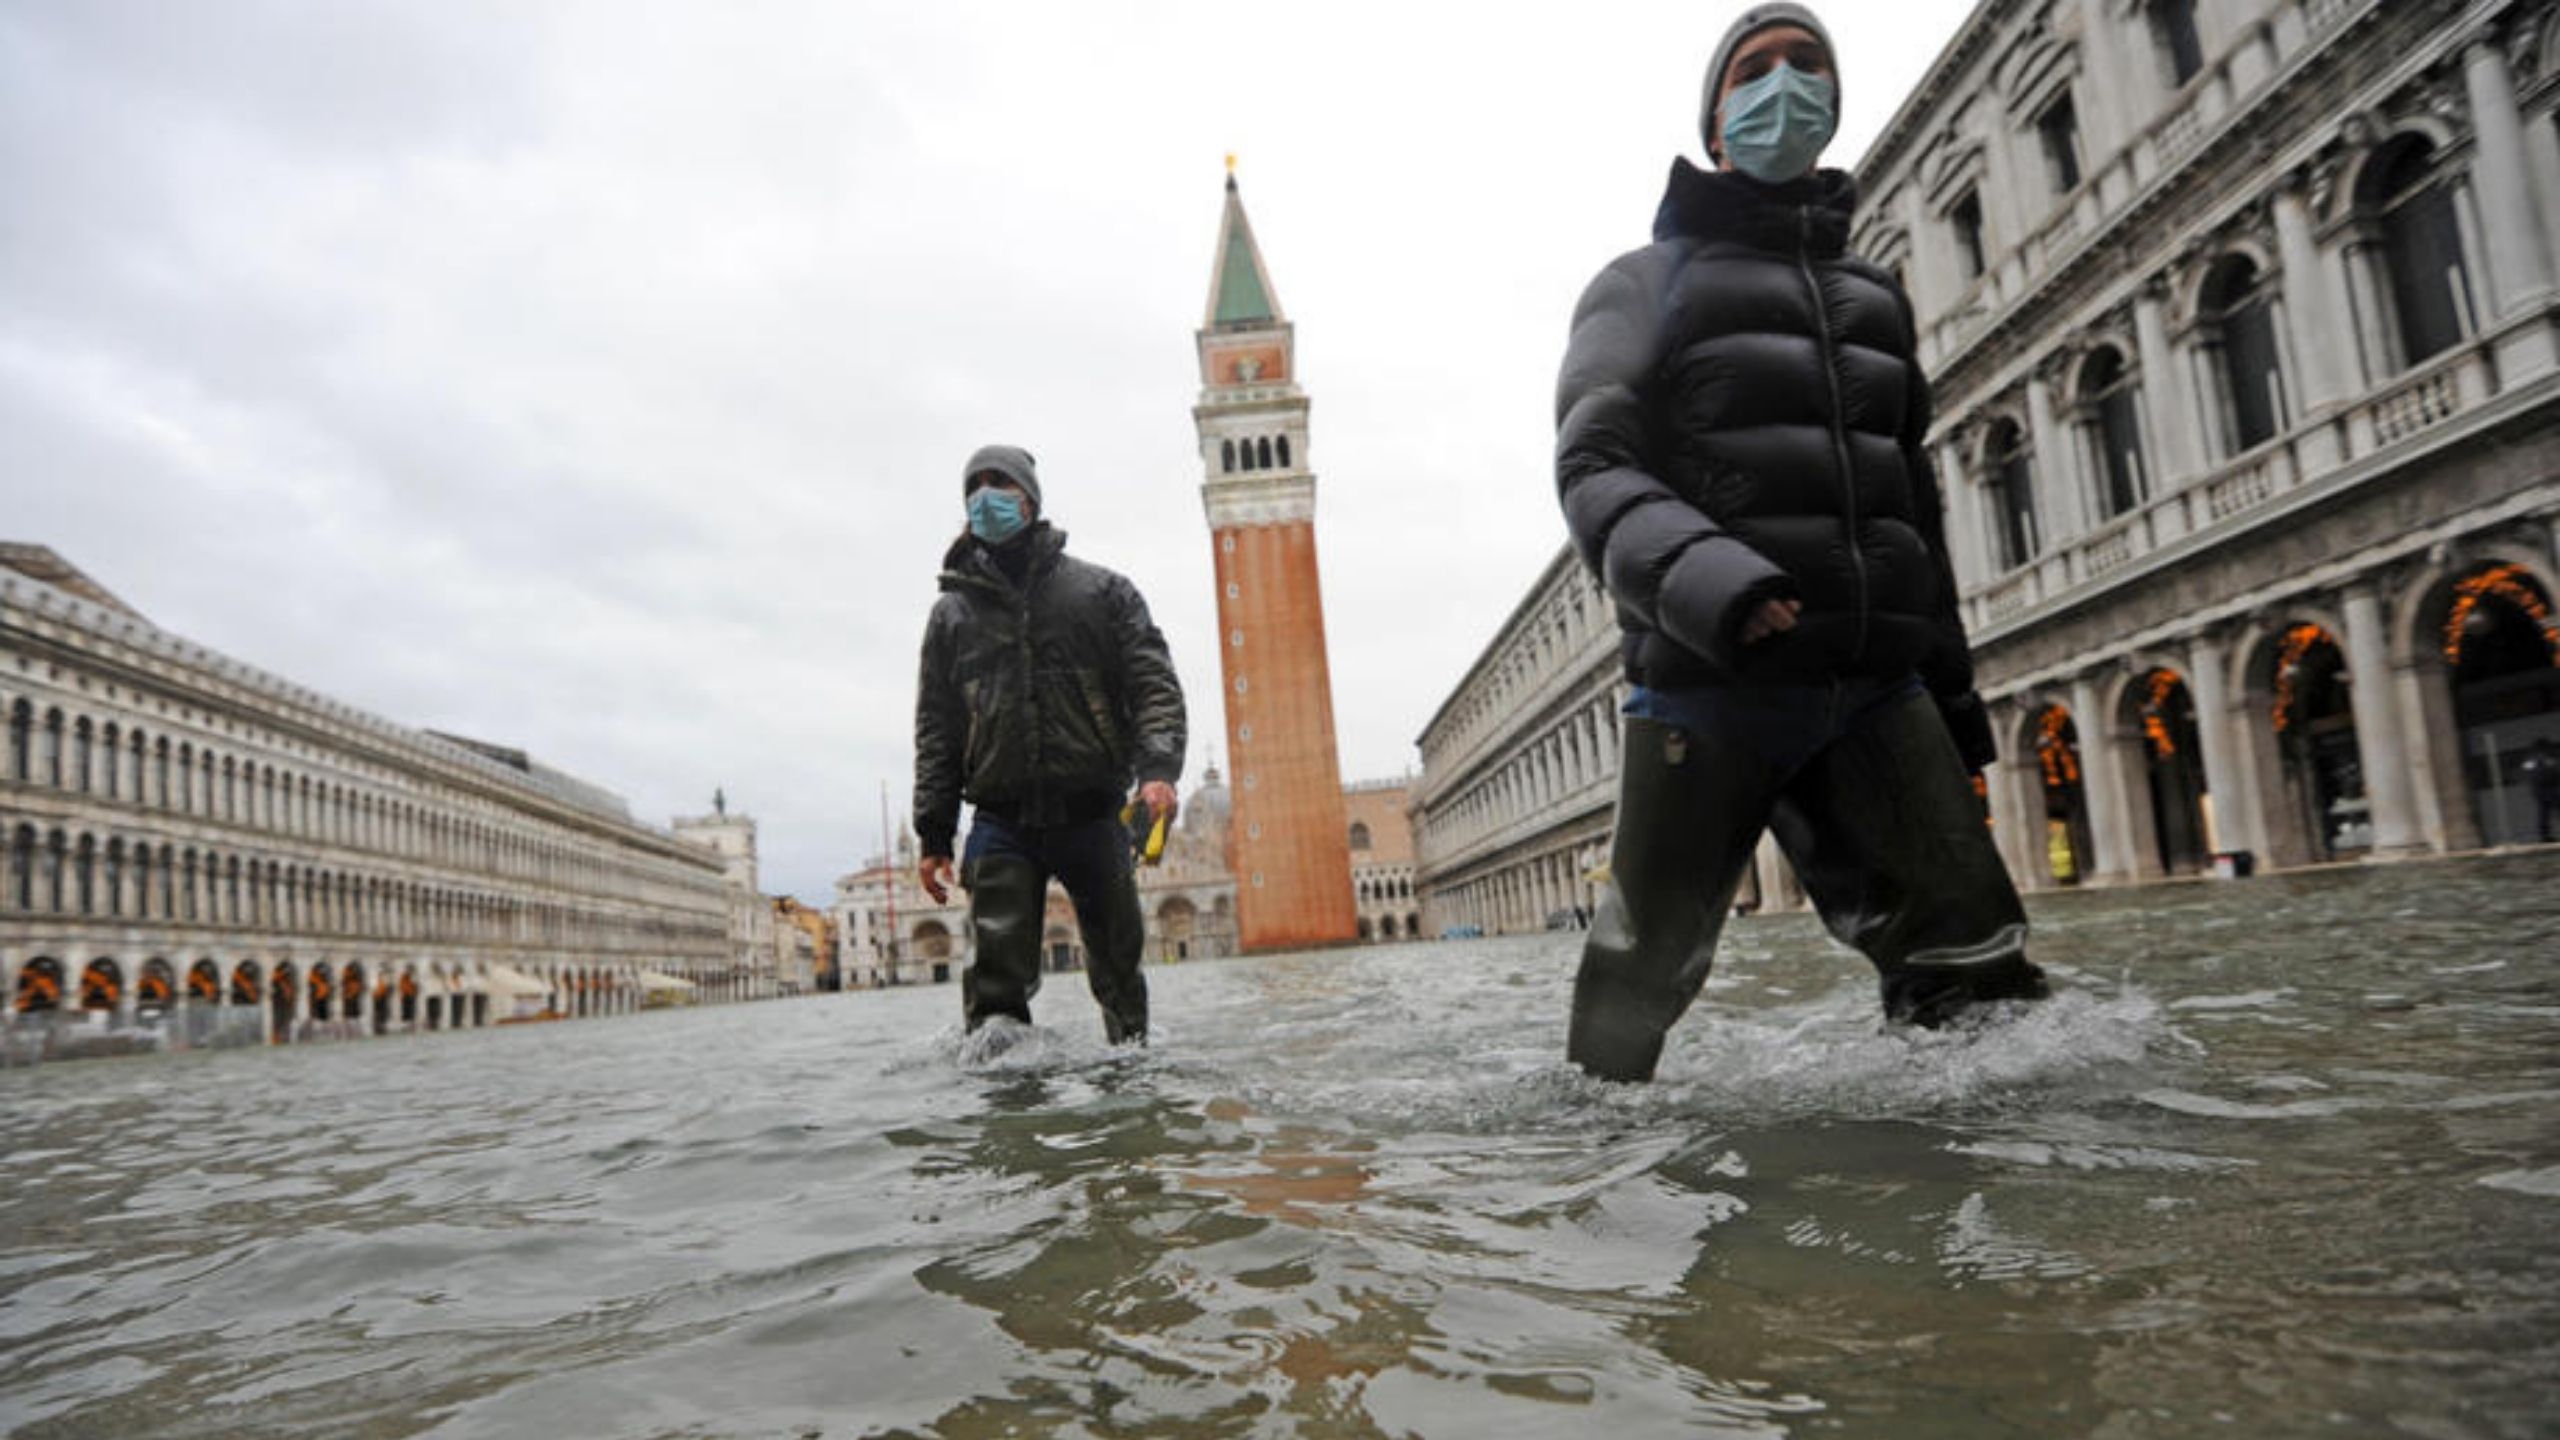 Posle poplave znamenitosti Venecije pod vodom (FOTO, VIDEO) 1